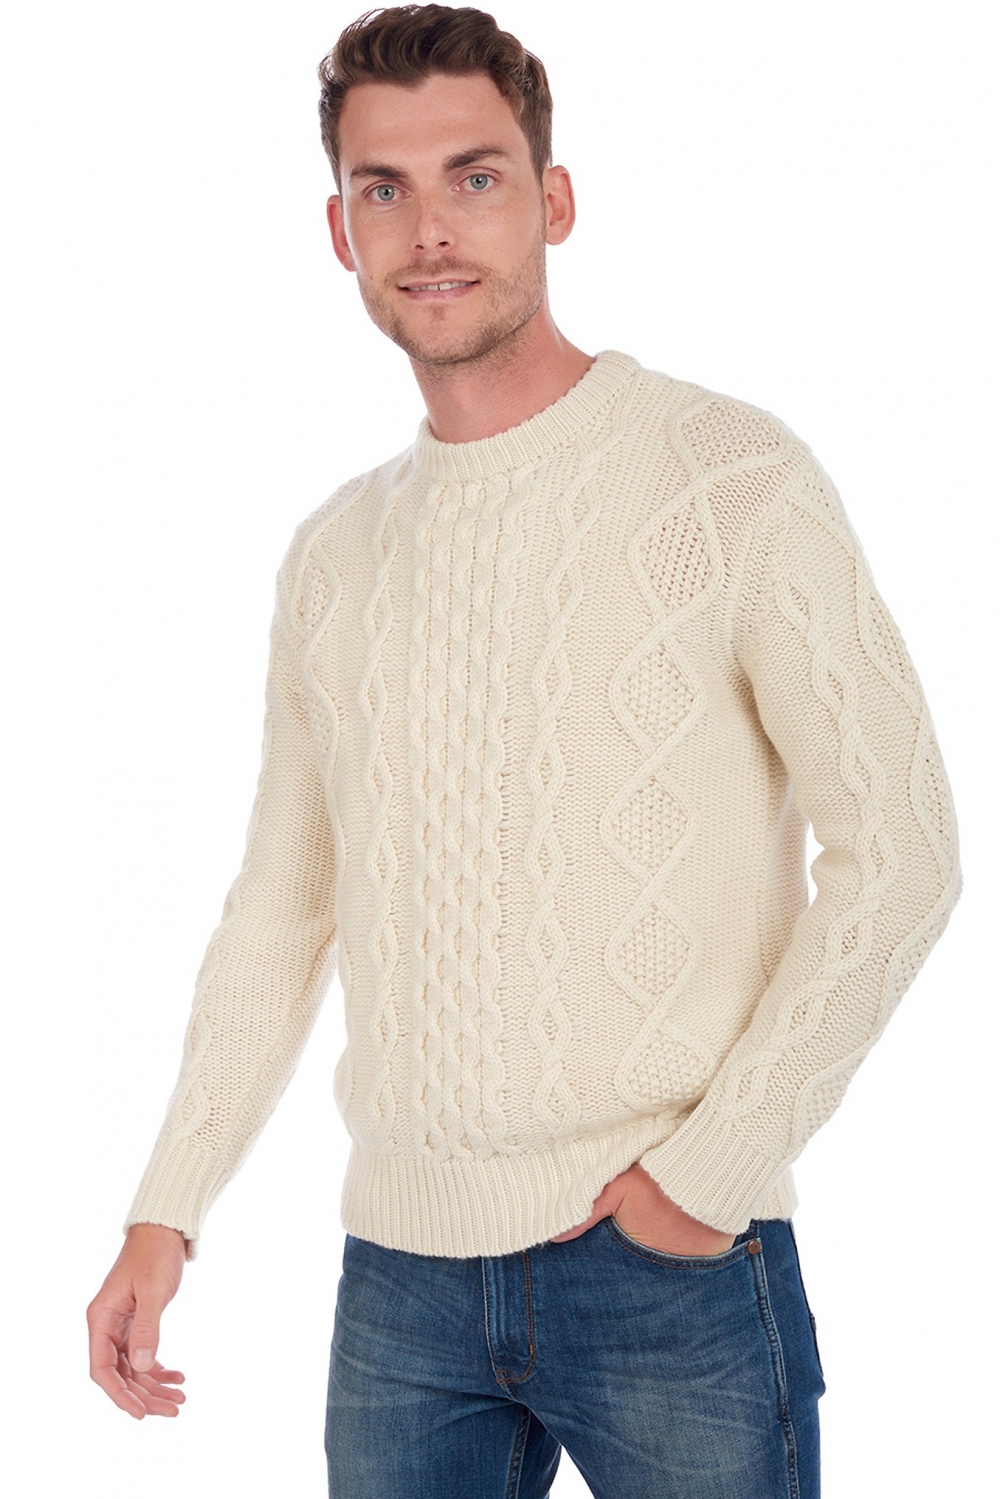 Cashmere men chunky sweater acharnes natural ecru 2xl